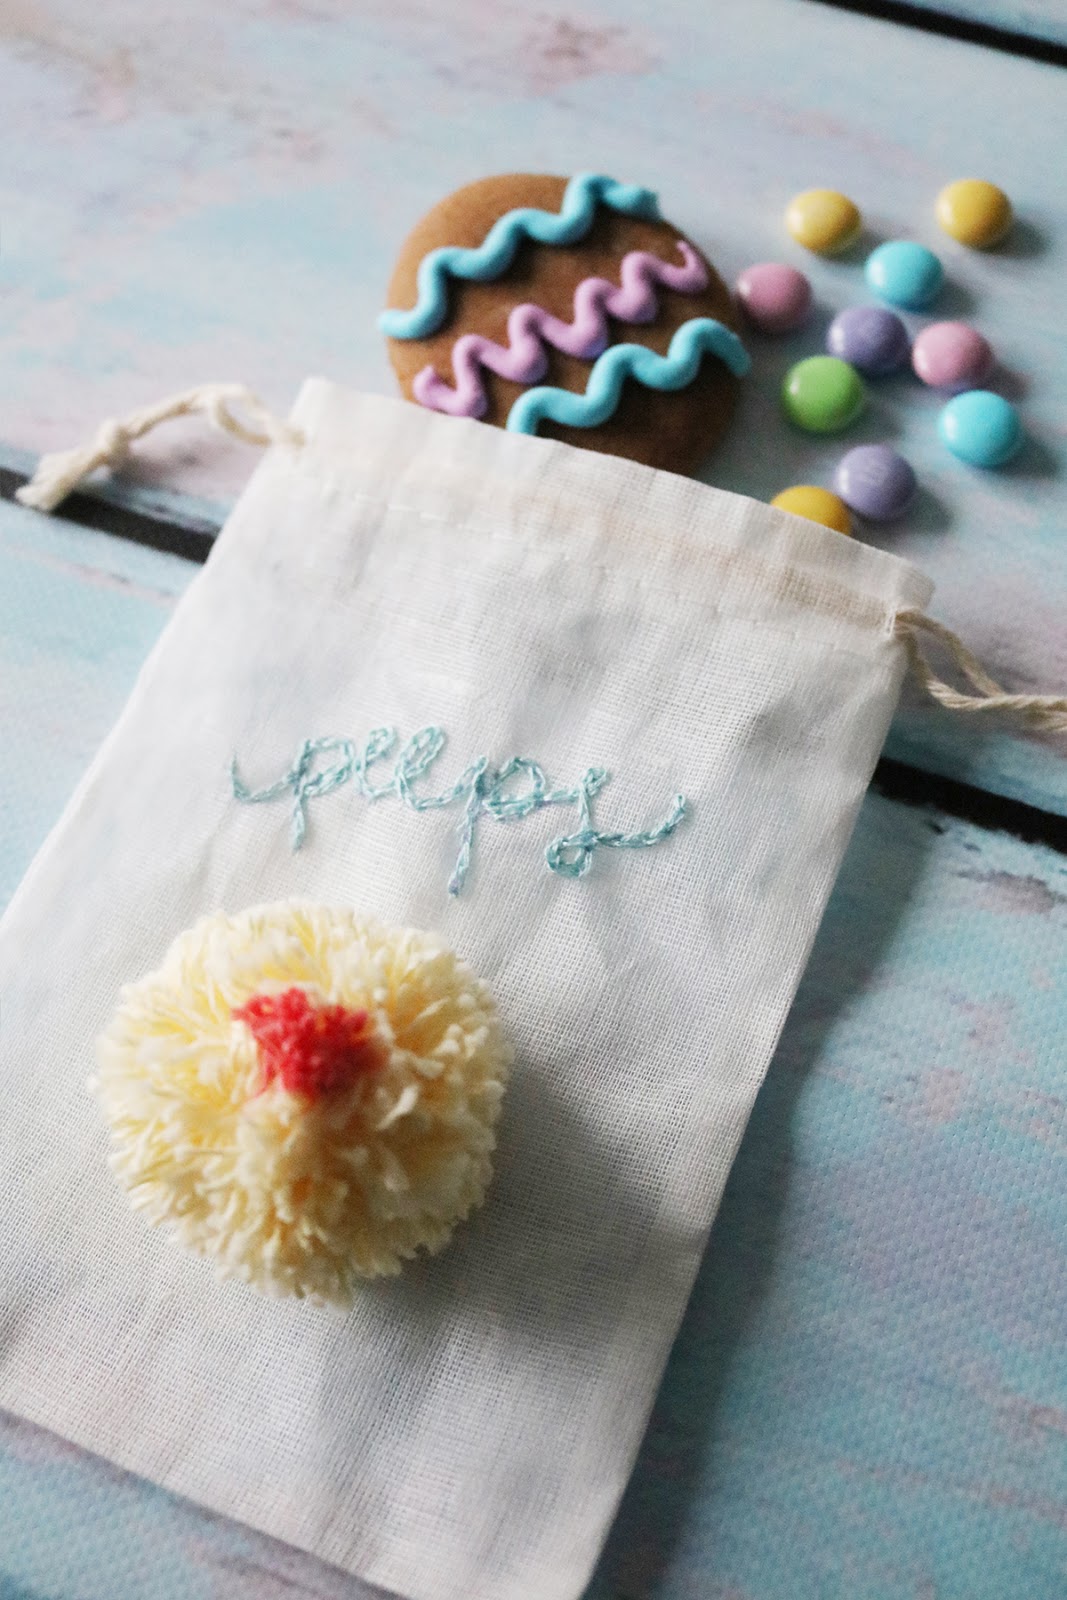 DIY Easter themed gift packaging inspiration using handmade pom poms | Lorrie Everitt Studio